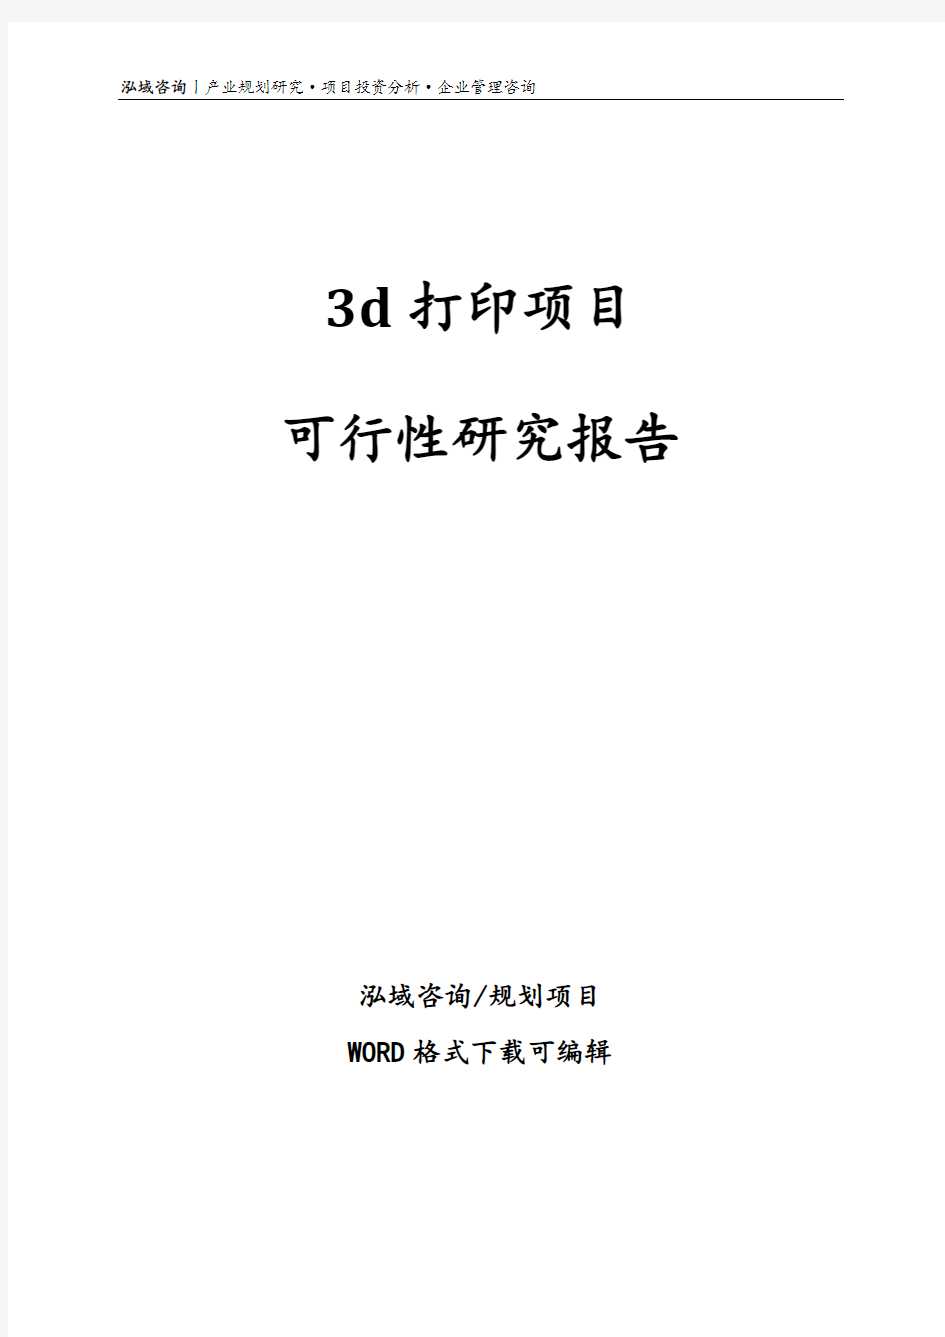 3d打印项目可行性研究报告